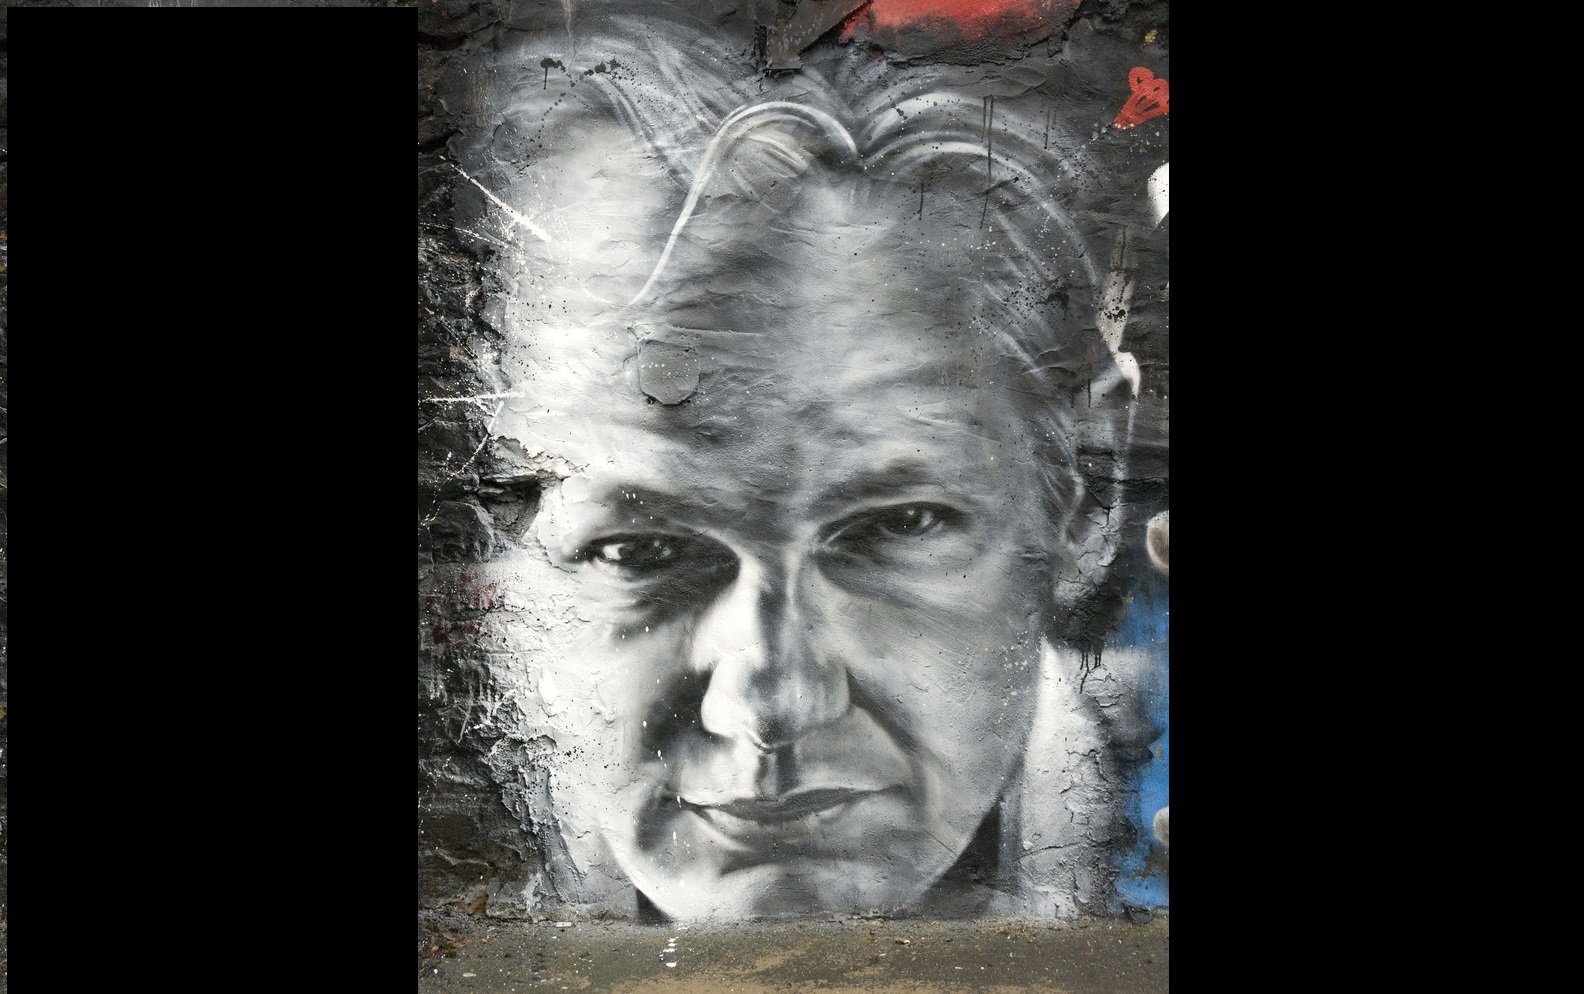 Silence keeps Julian Assange’s fate a mystery